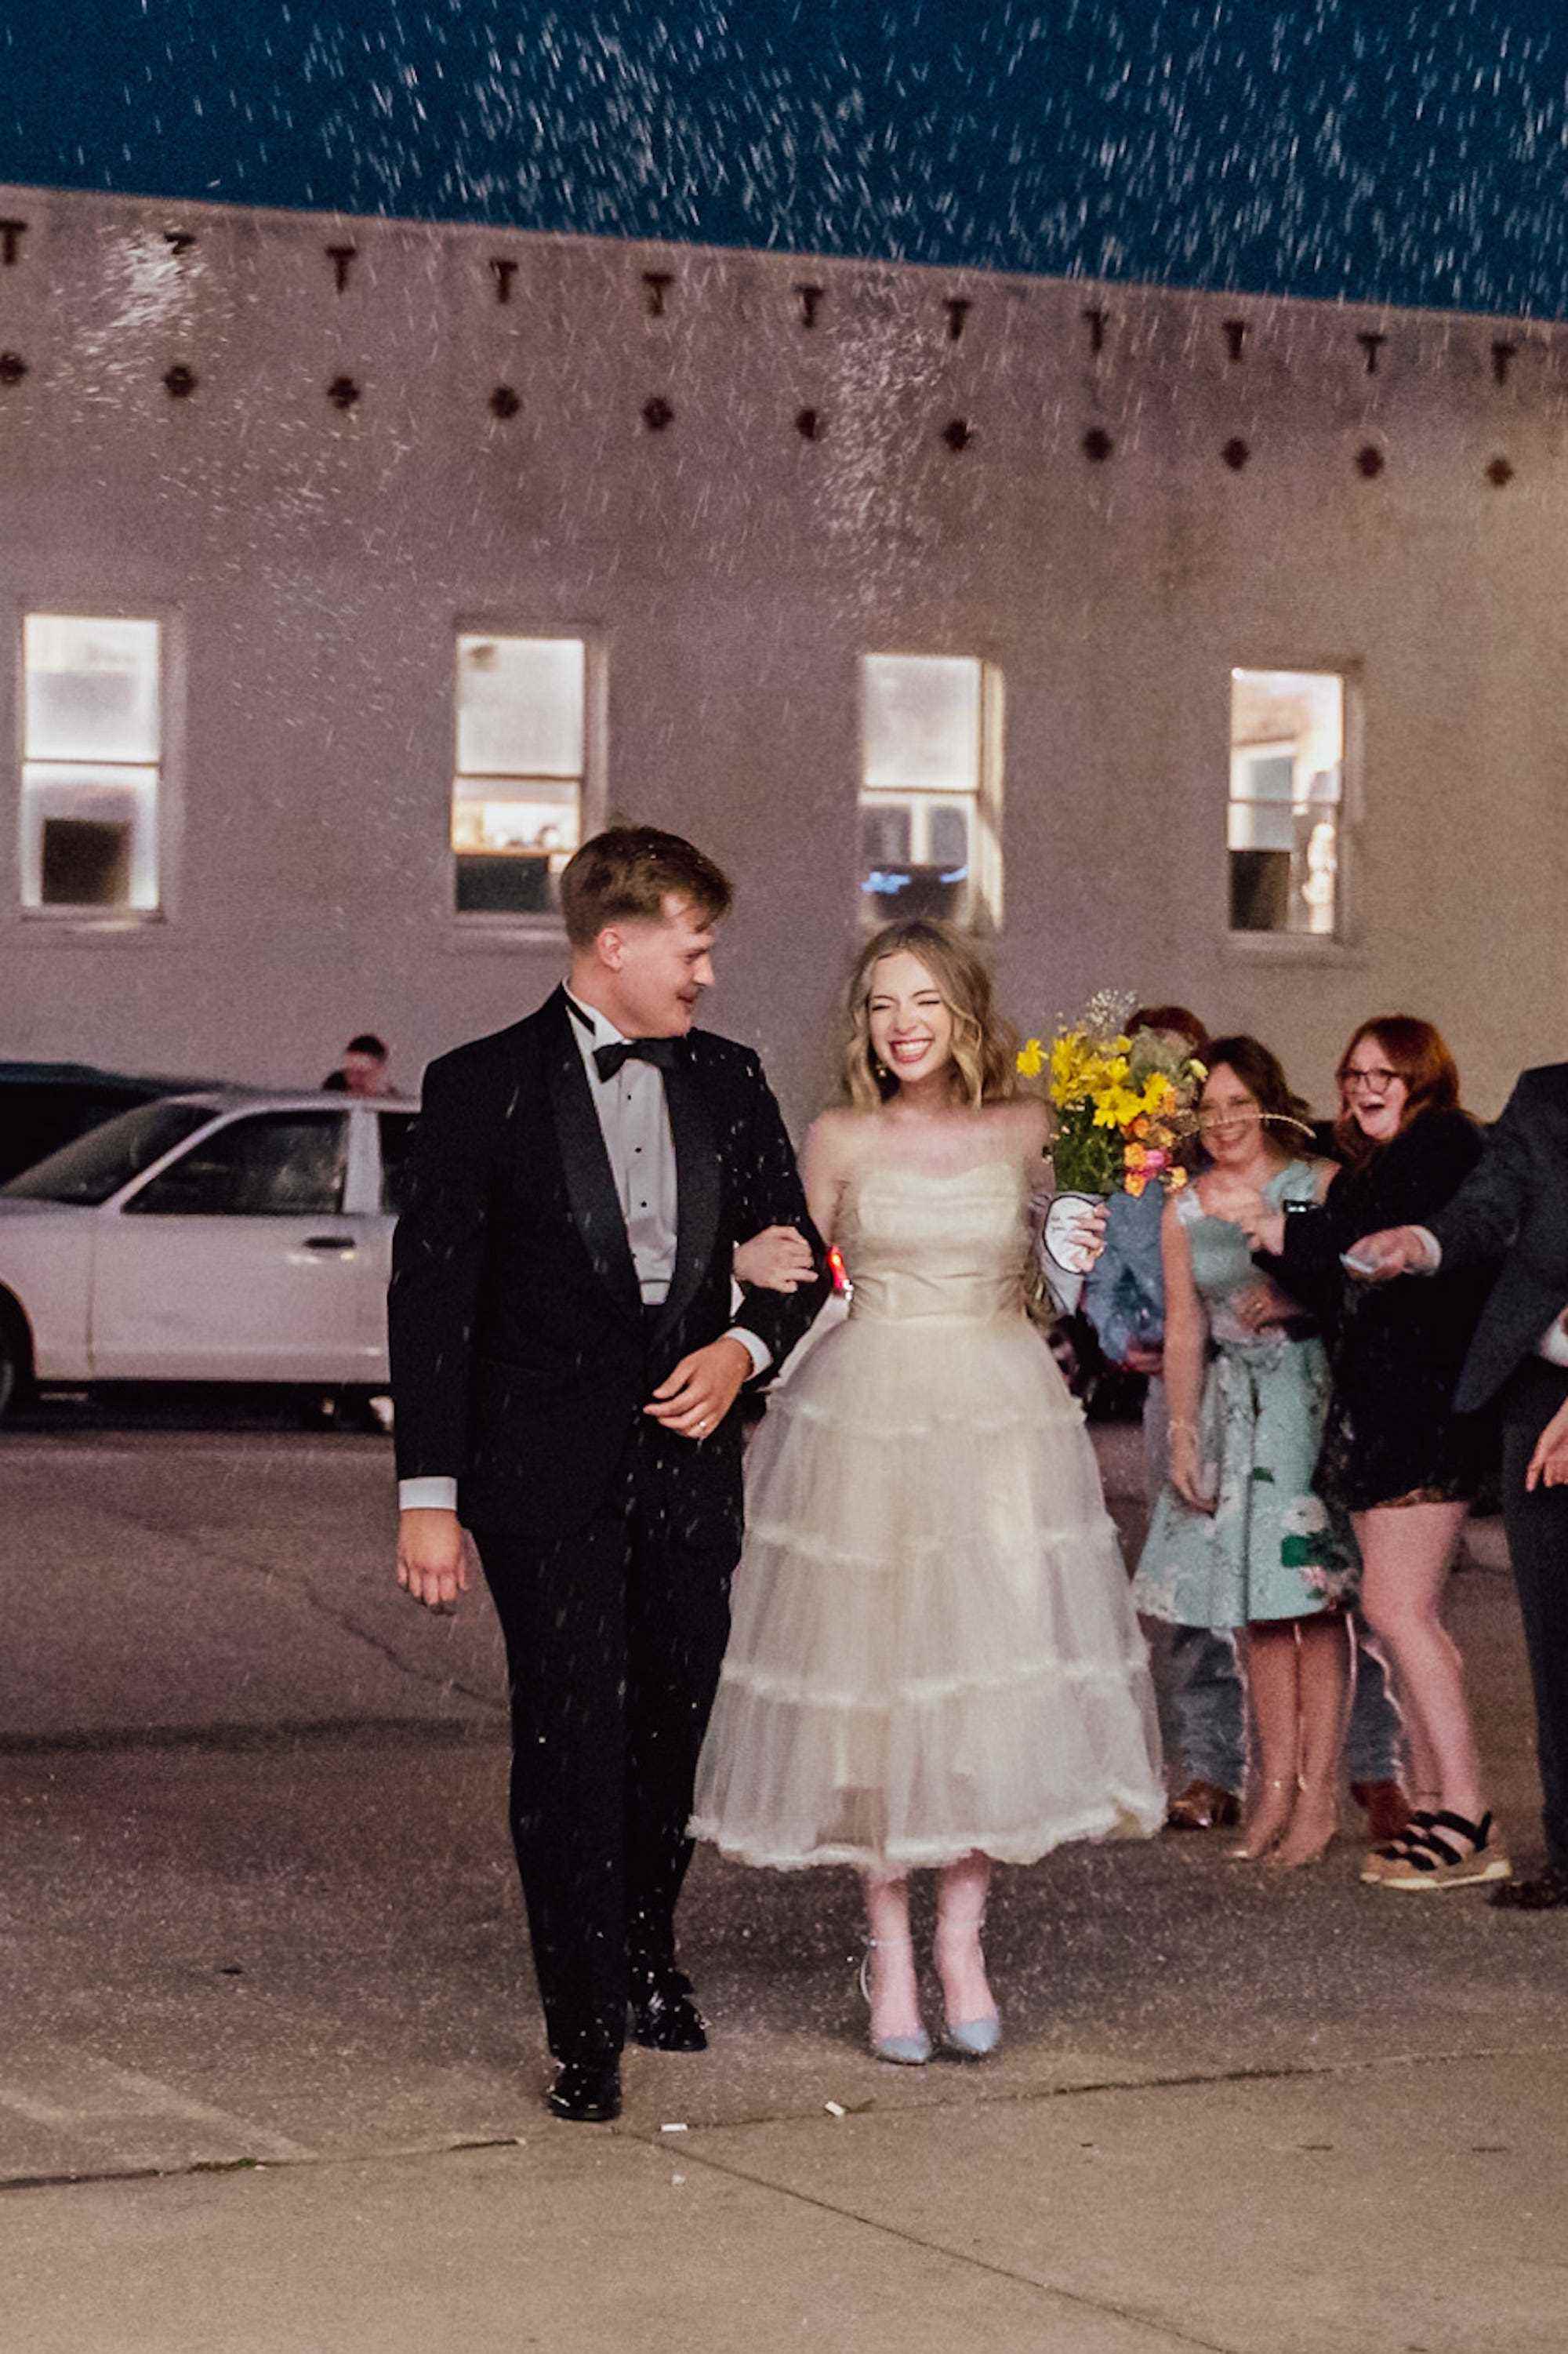 Ein Brautpaar grinst und verlässt gemeinsam ihren Hochzeitsempfang.